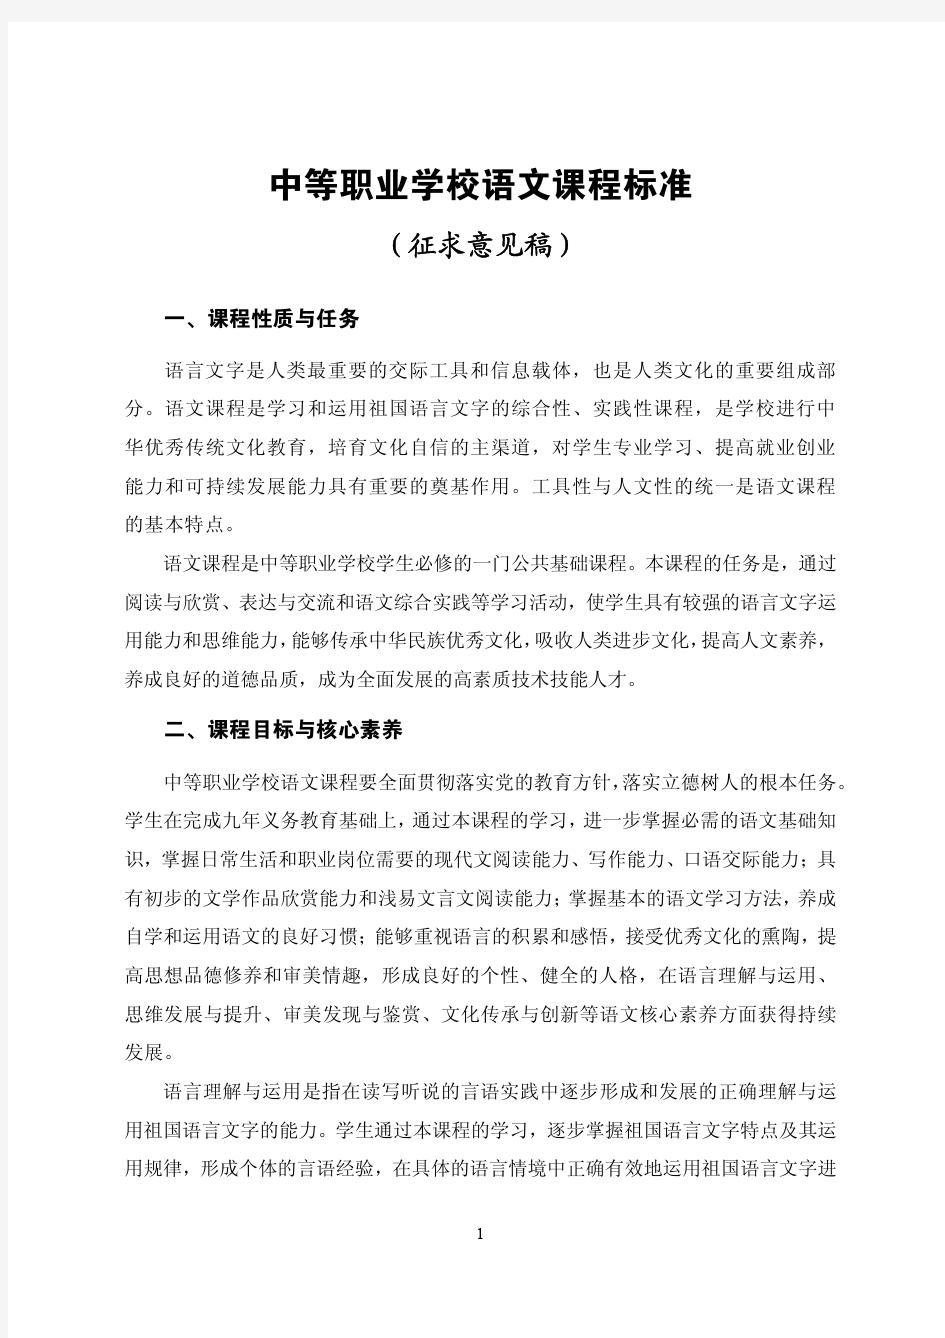 中等职业学校语文课程标准 中华人民共和国教育部